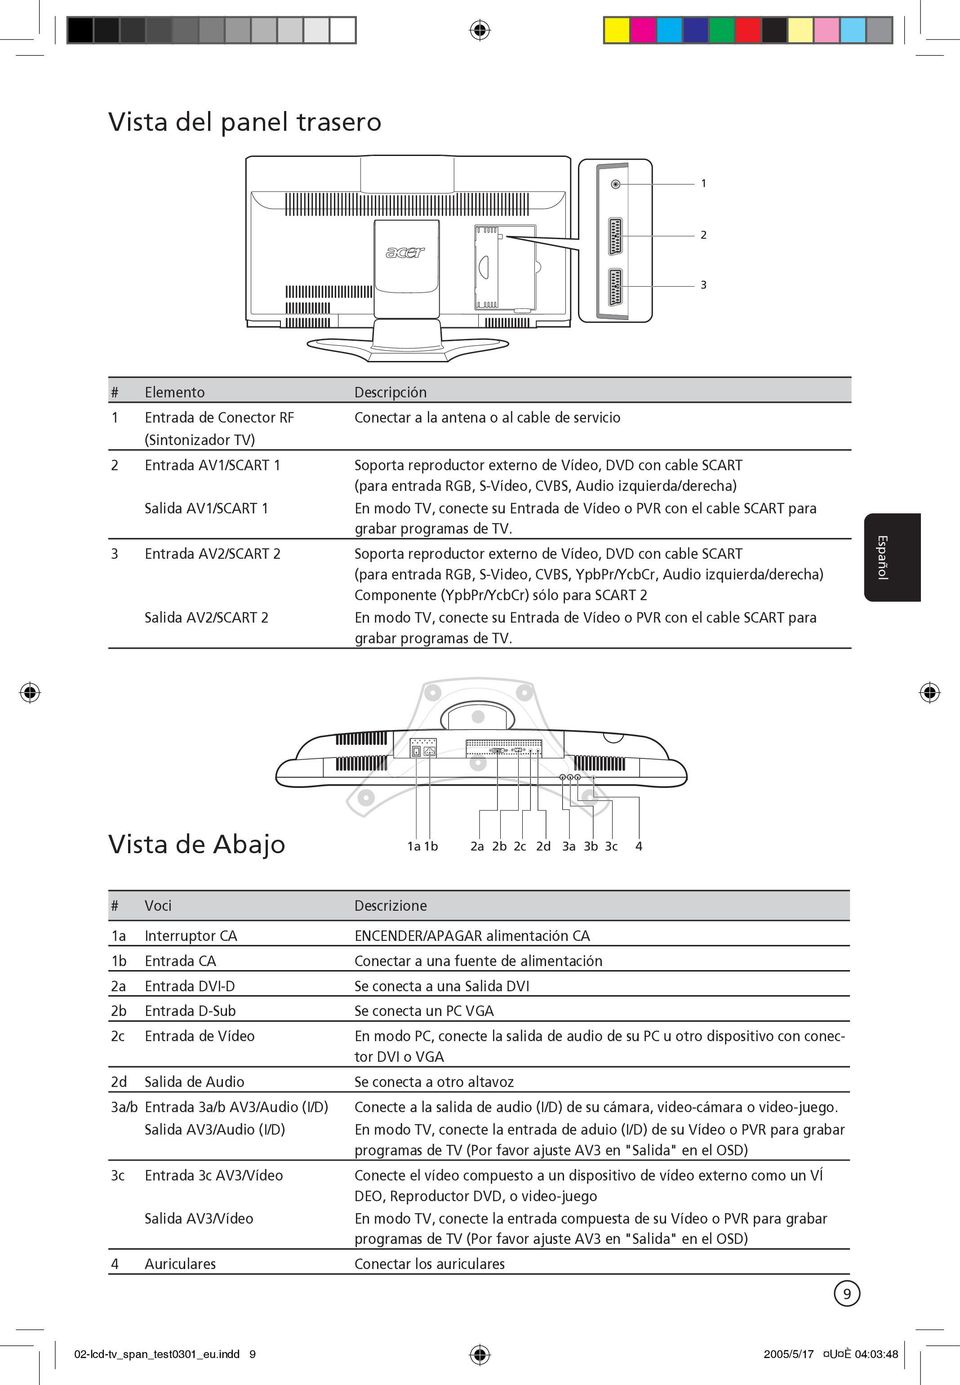 3 Entrada AV2/SCART 2 Soporta reproductor externo de Vídeo, DVD con cable SCART (para entrada RGB, S-Video, CVBS, YpbPr/YcbCr, Audio izquierda/derecha) Componente (YpbPr/YcbCr) sólo para SCART 2